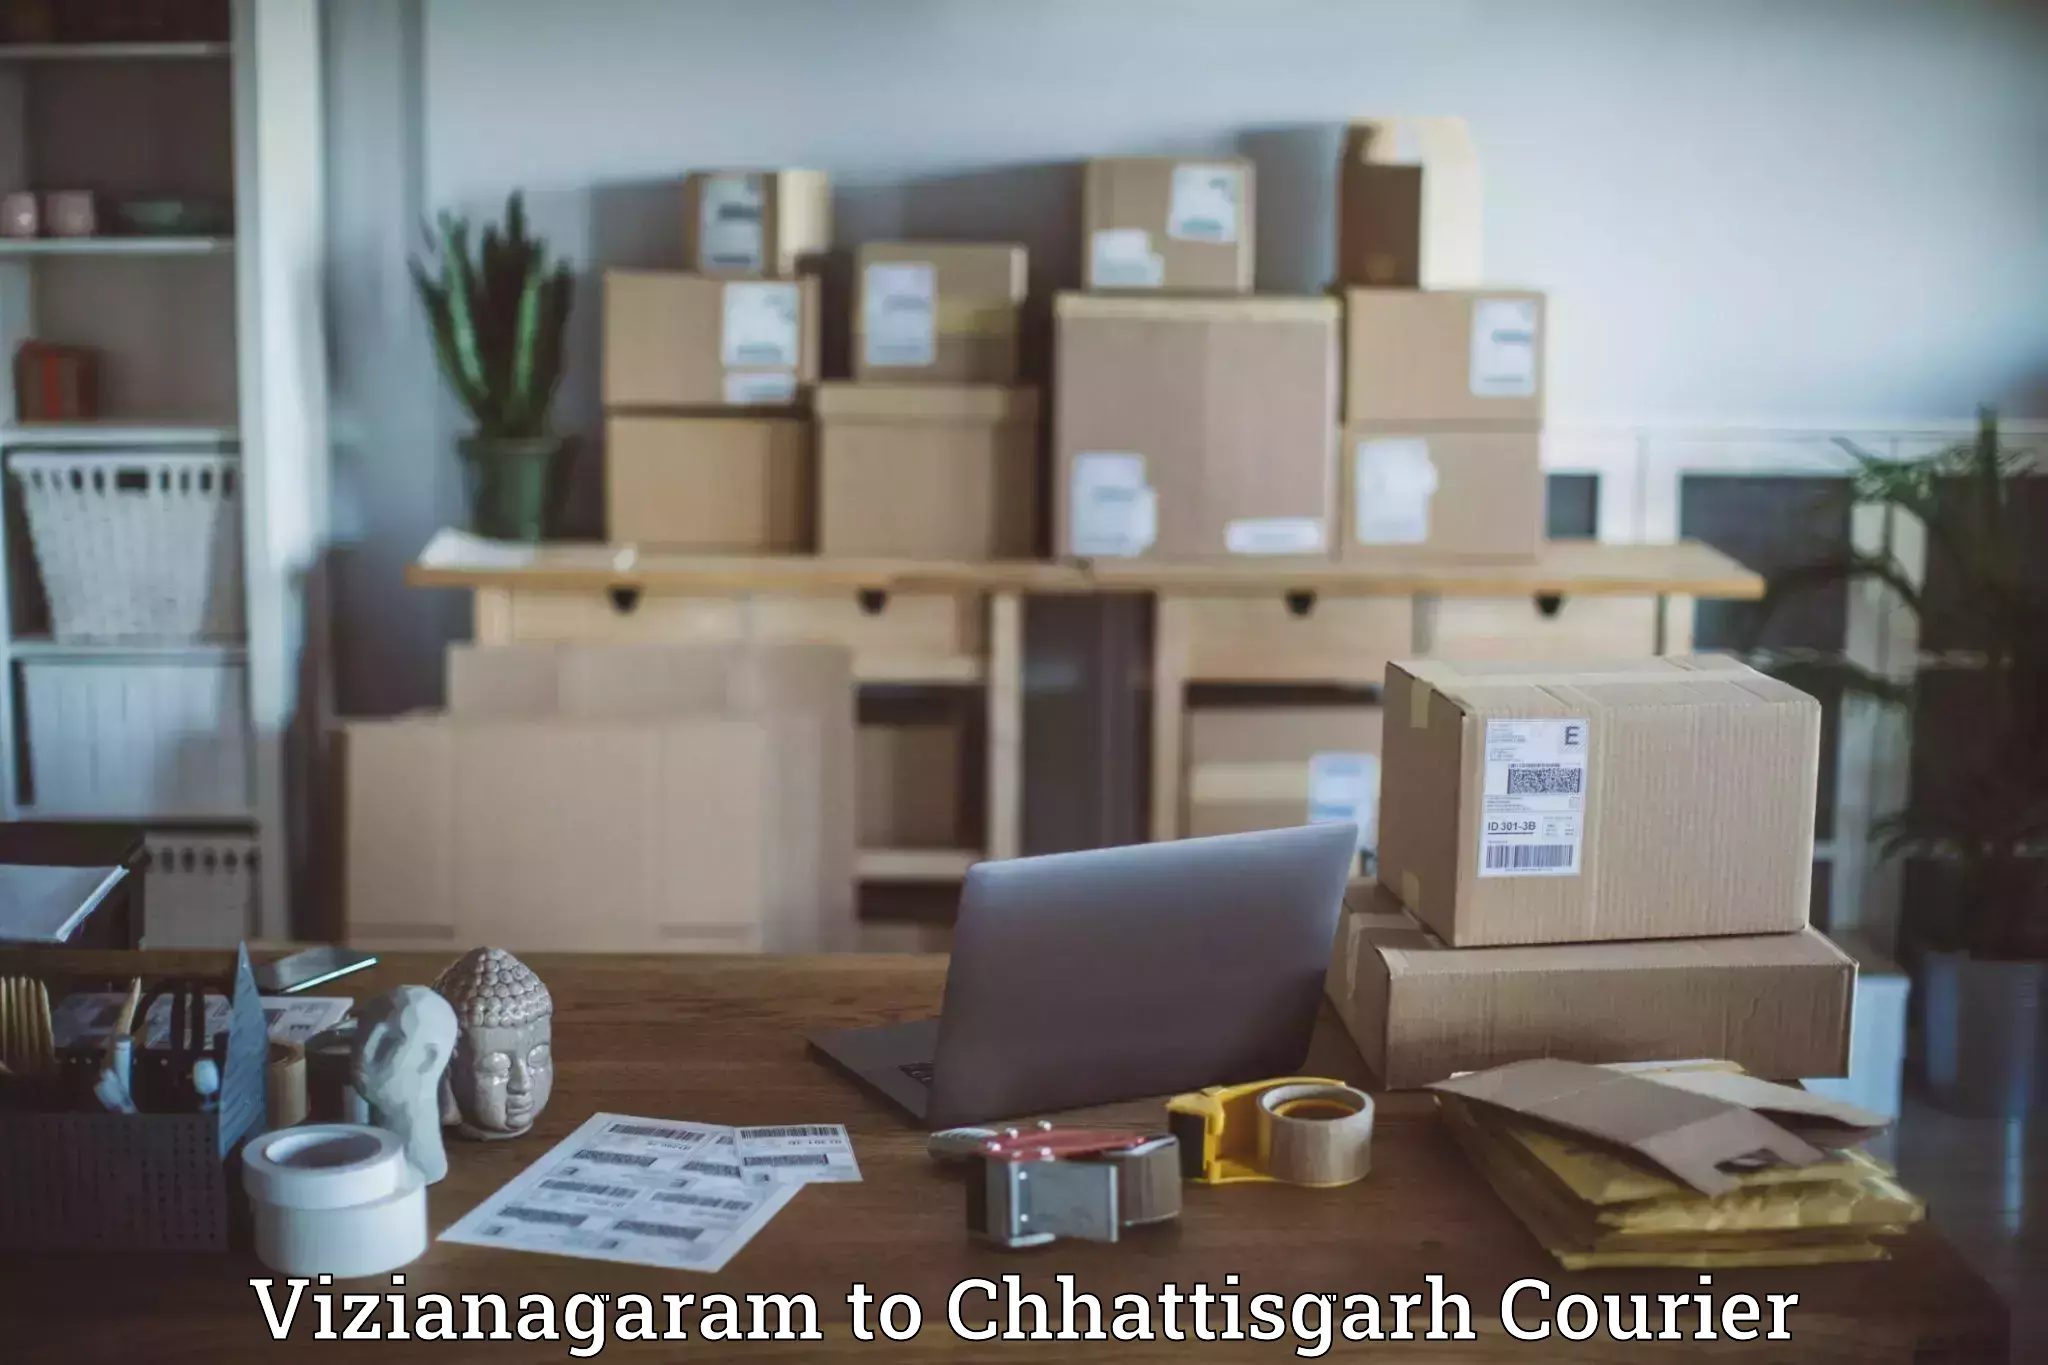 Fast delivery service Vizianagaram to Bijapur Chhattisgarh